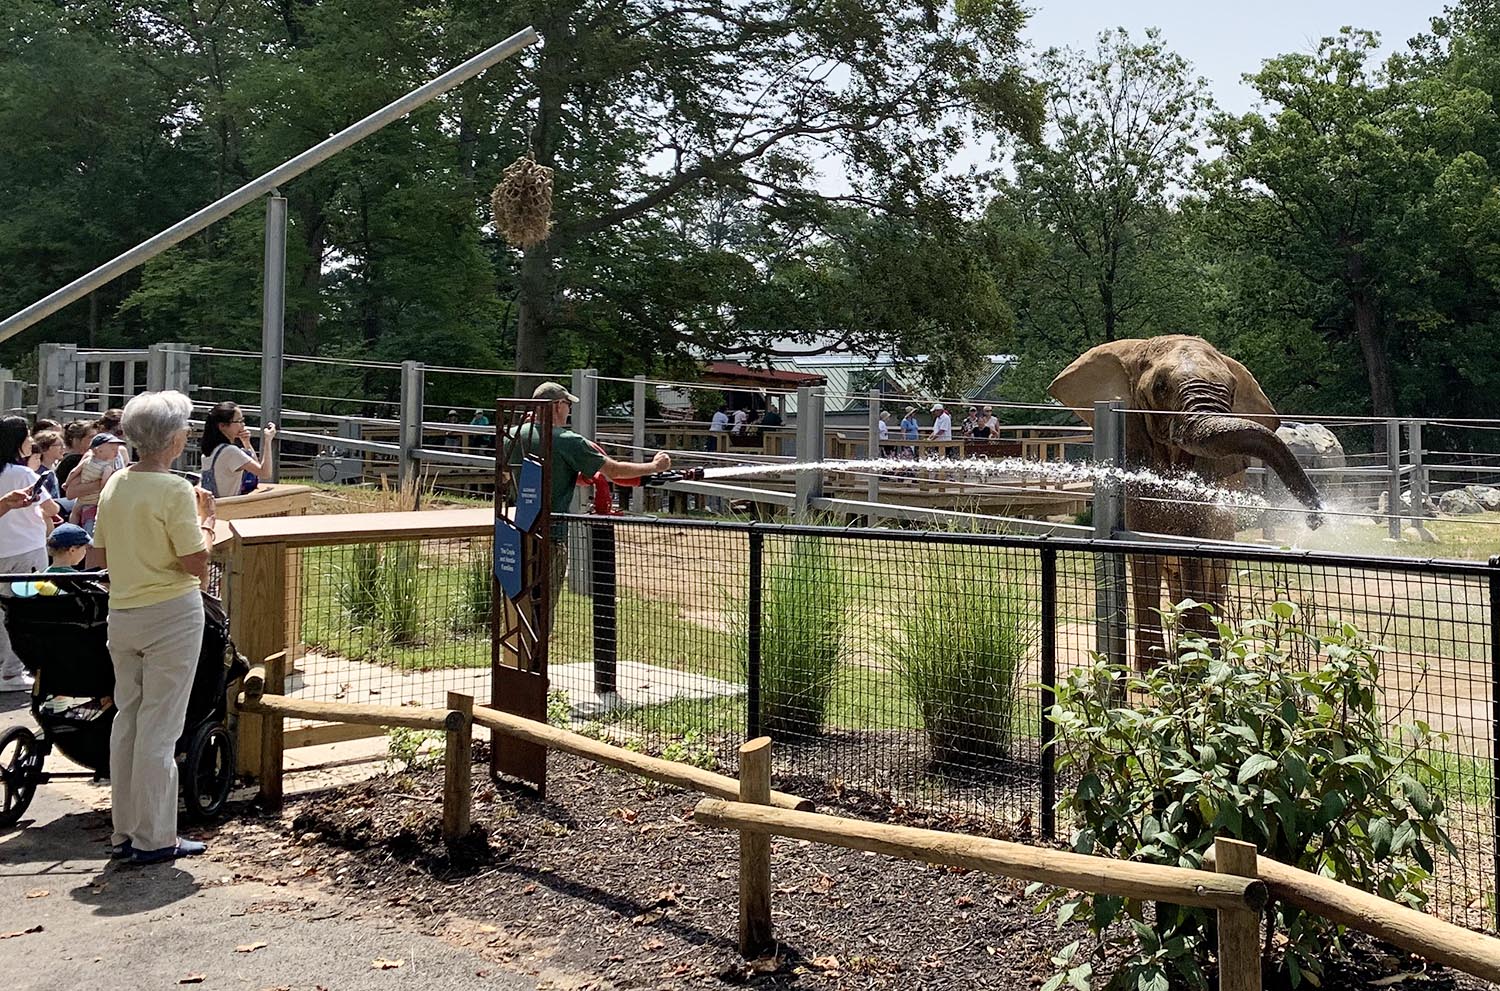 Maryland Zoo Reveals Elephant, Giraffe, Lion Home Makeover - CLR